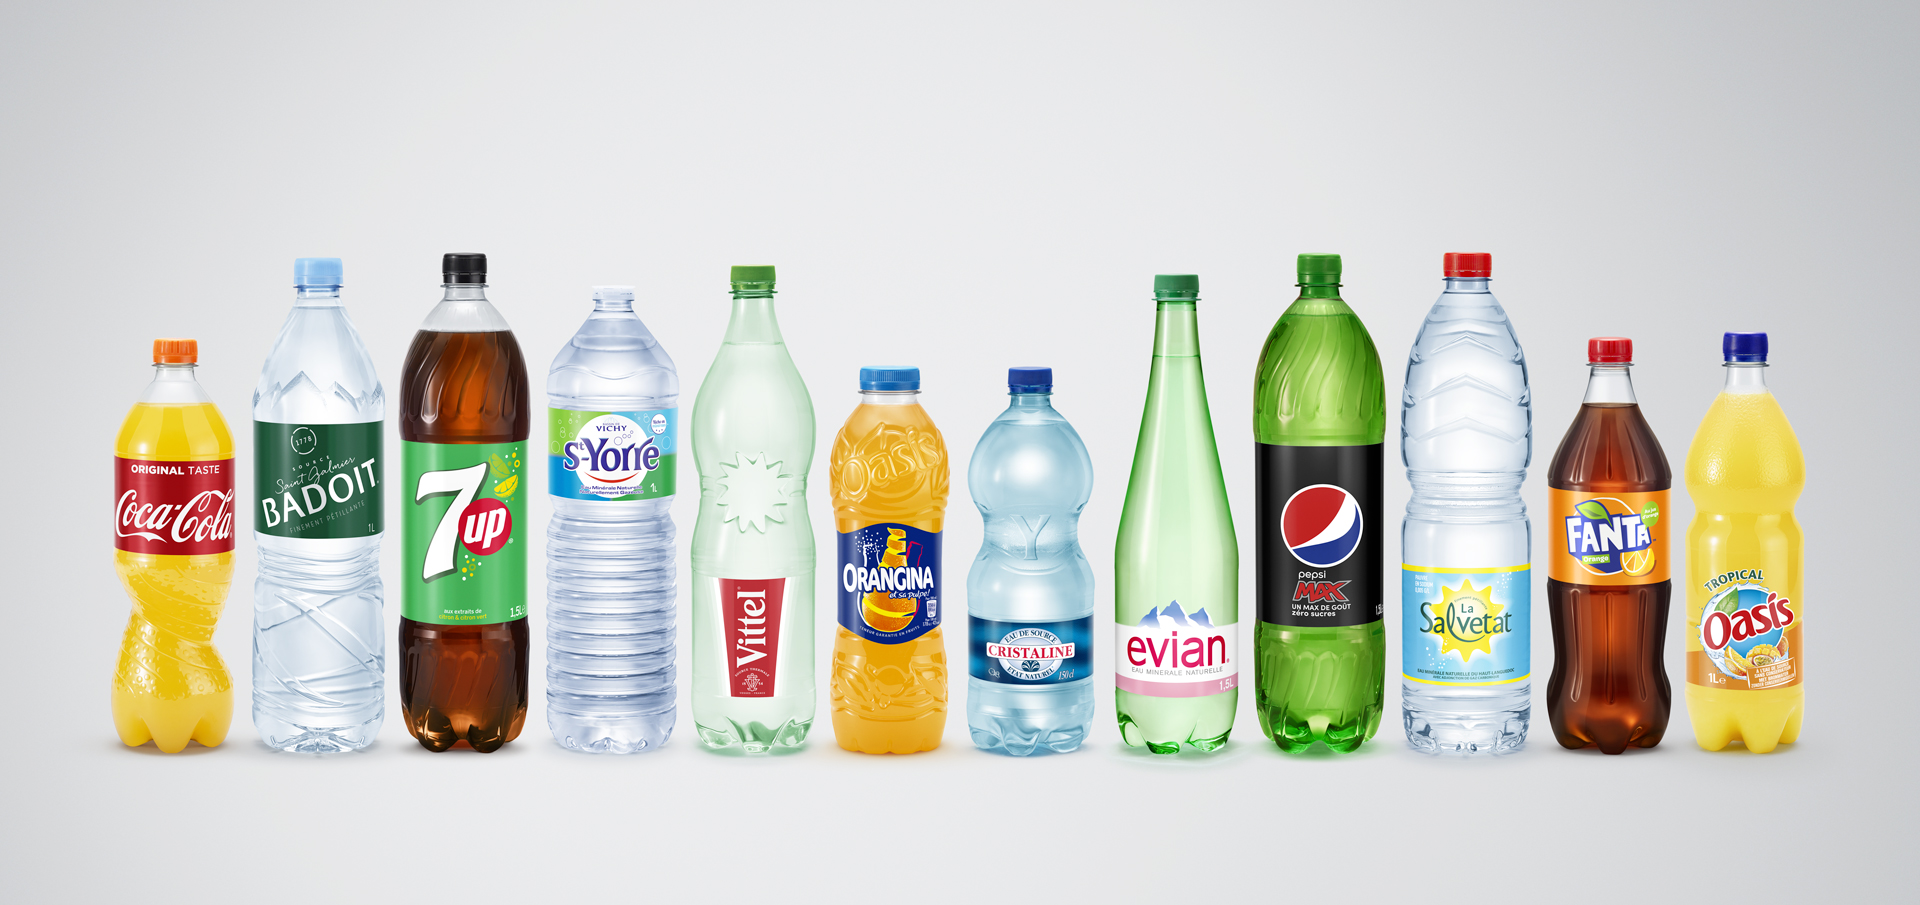 Une campagne inédite avec les marques de boissons pour inciter au tri des bouteilles en plastique